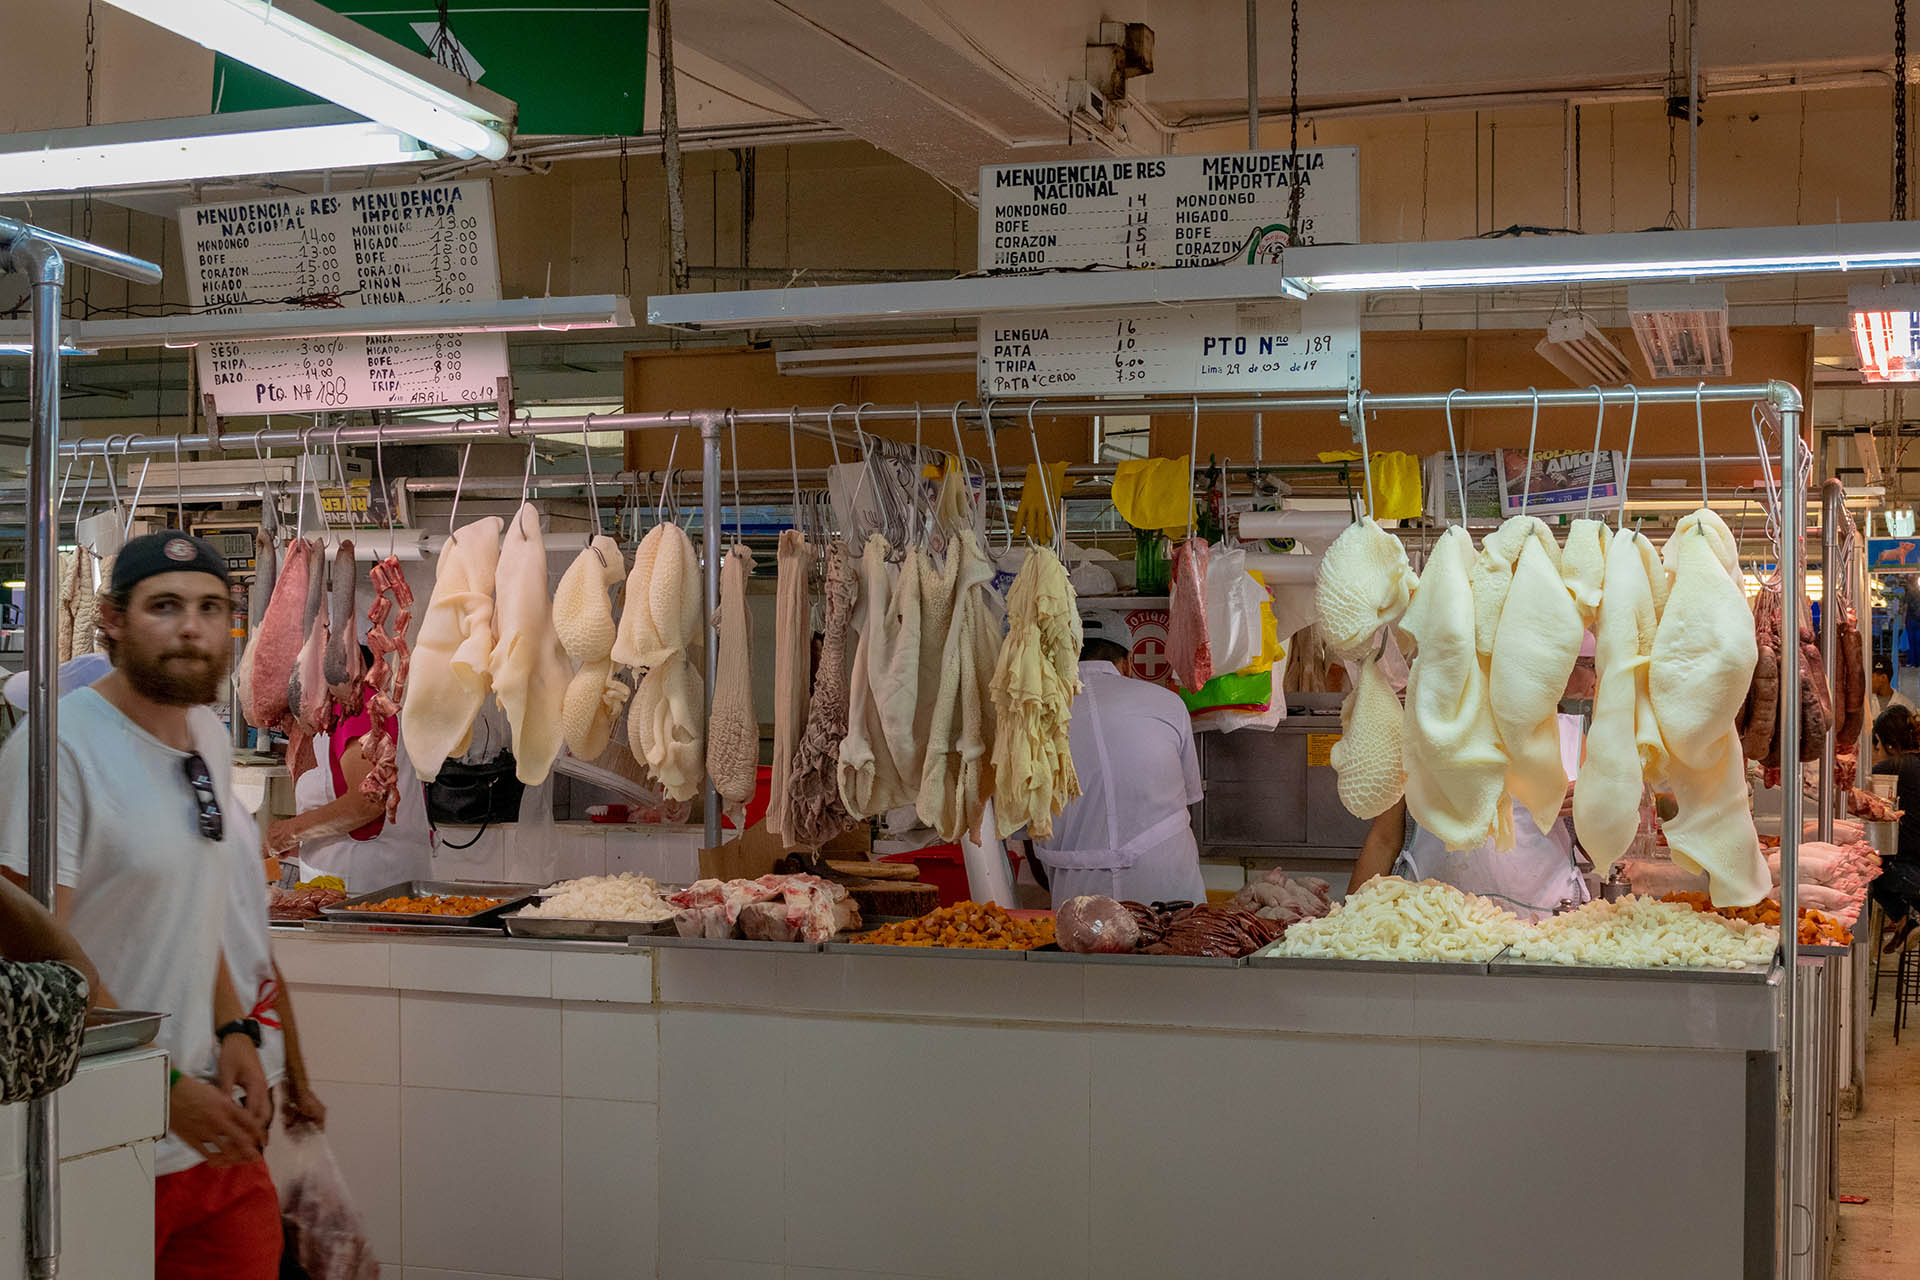 Een kraam vol vleesproducten in de centrale markt van Lima: Mercado Central